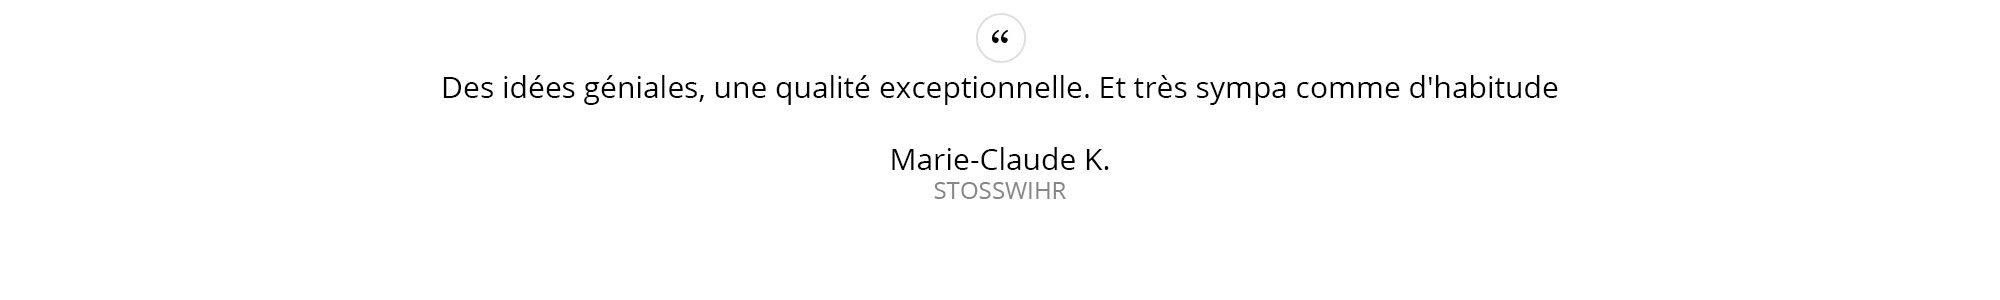 Marie-Claude-K.---STOSSWIHR